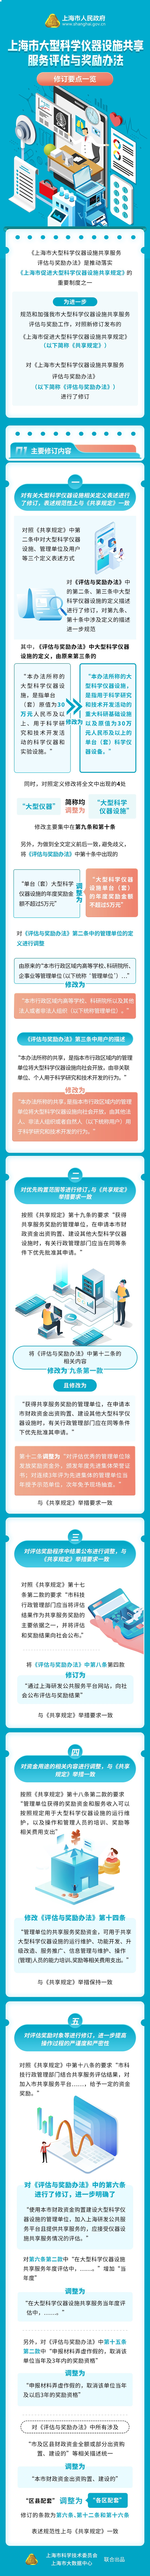 《上海市大型科学仪器设施共享服务评估与奖励办法》修订要点一览.jpg